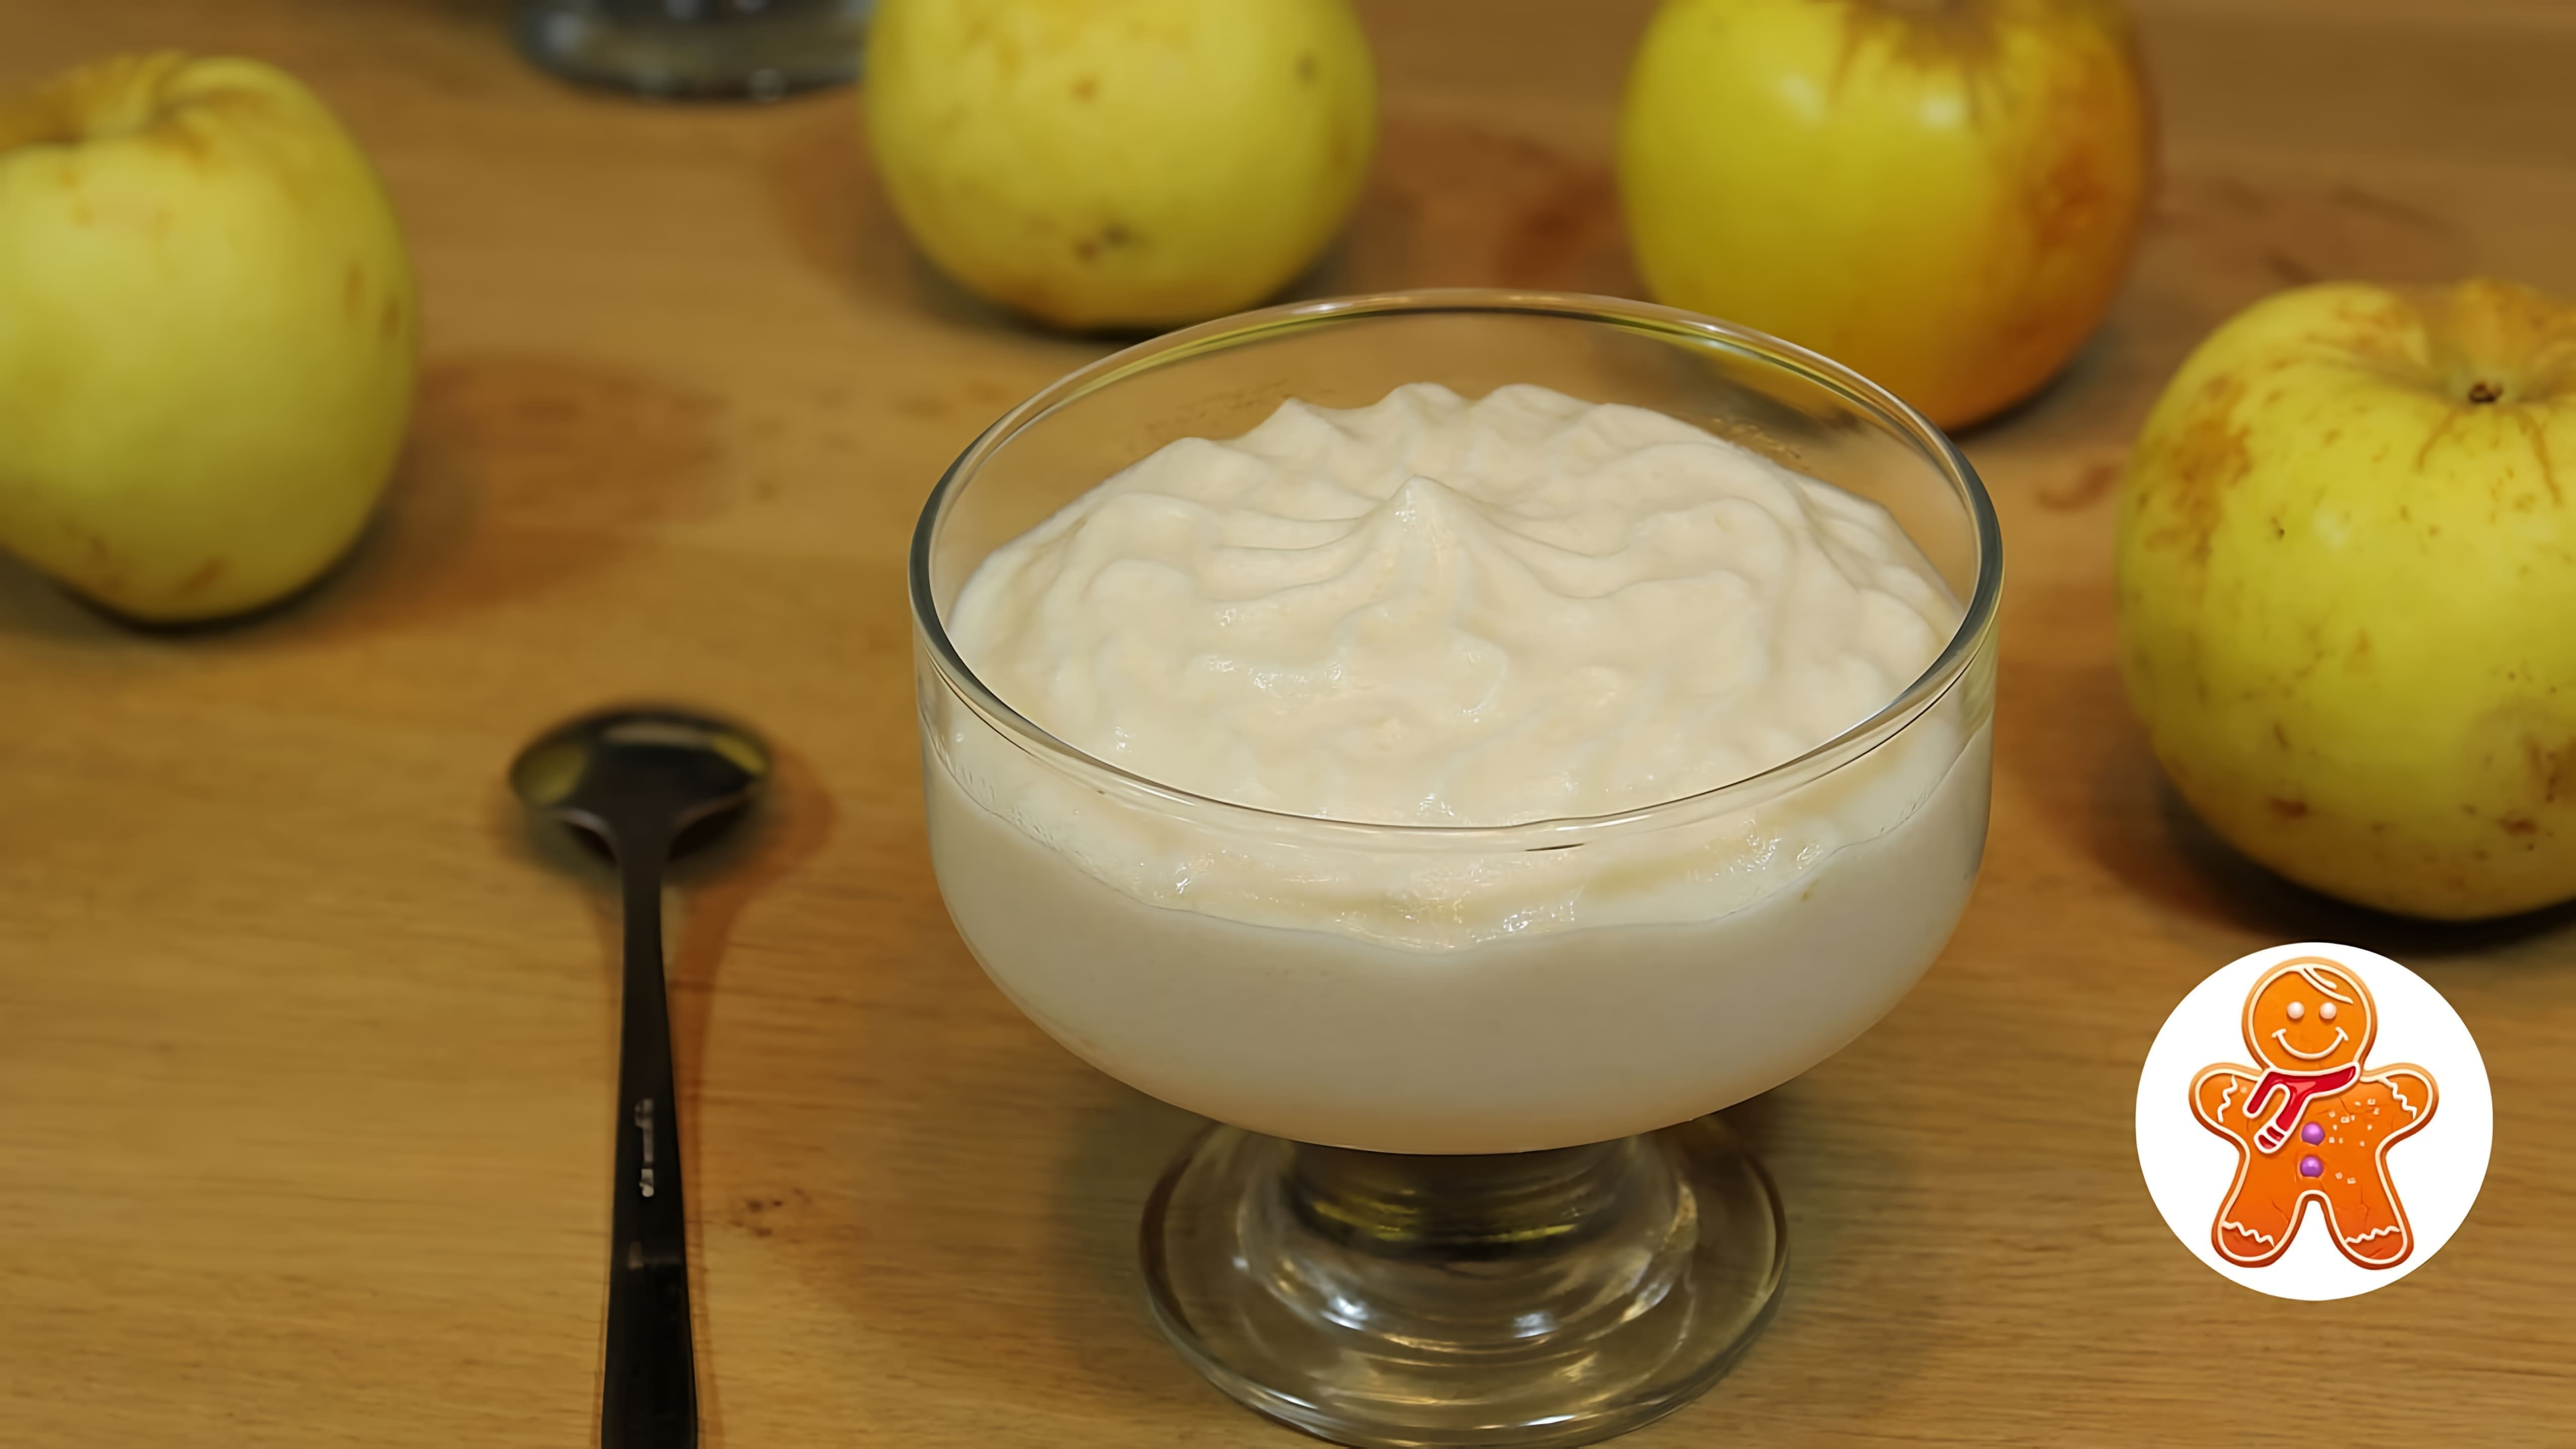 В этом видео демонстрируется рецепт приготовления яблочного мусса